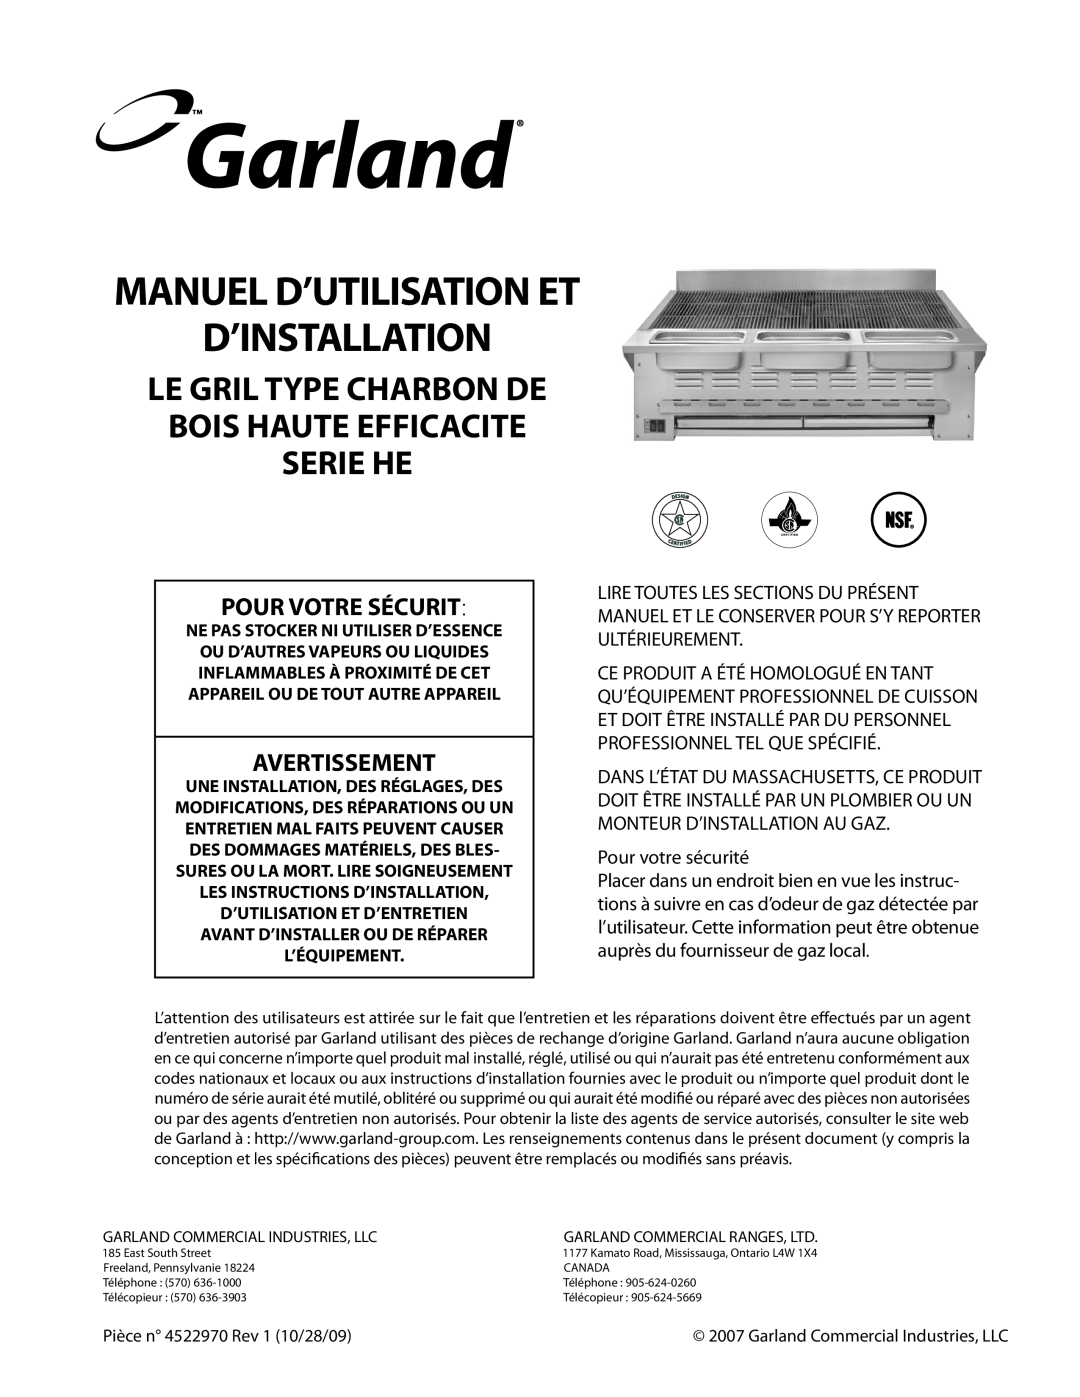 Garland 4522970 REV 1 Manuel D’Utilisation Et D’Installation, Le Gril Type Charbon De Bois Haute Efficacite Serie He 